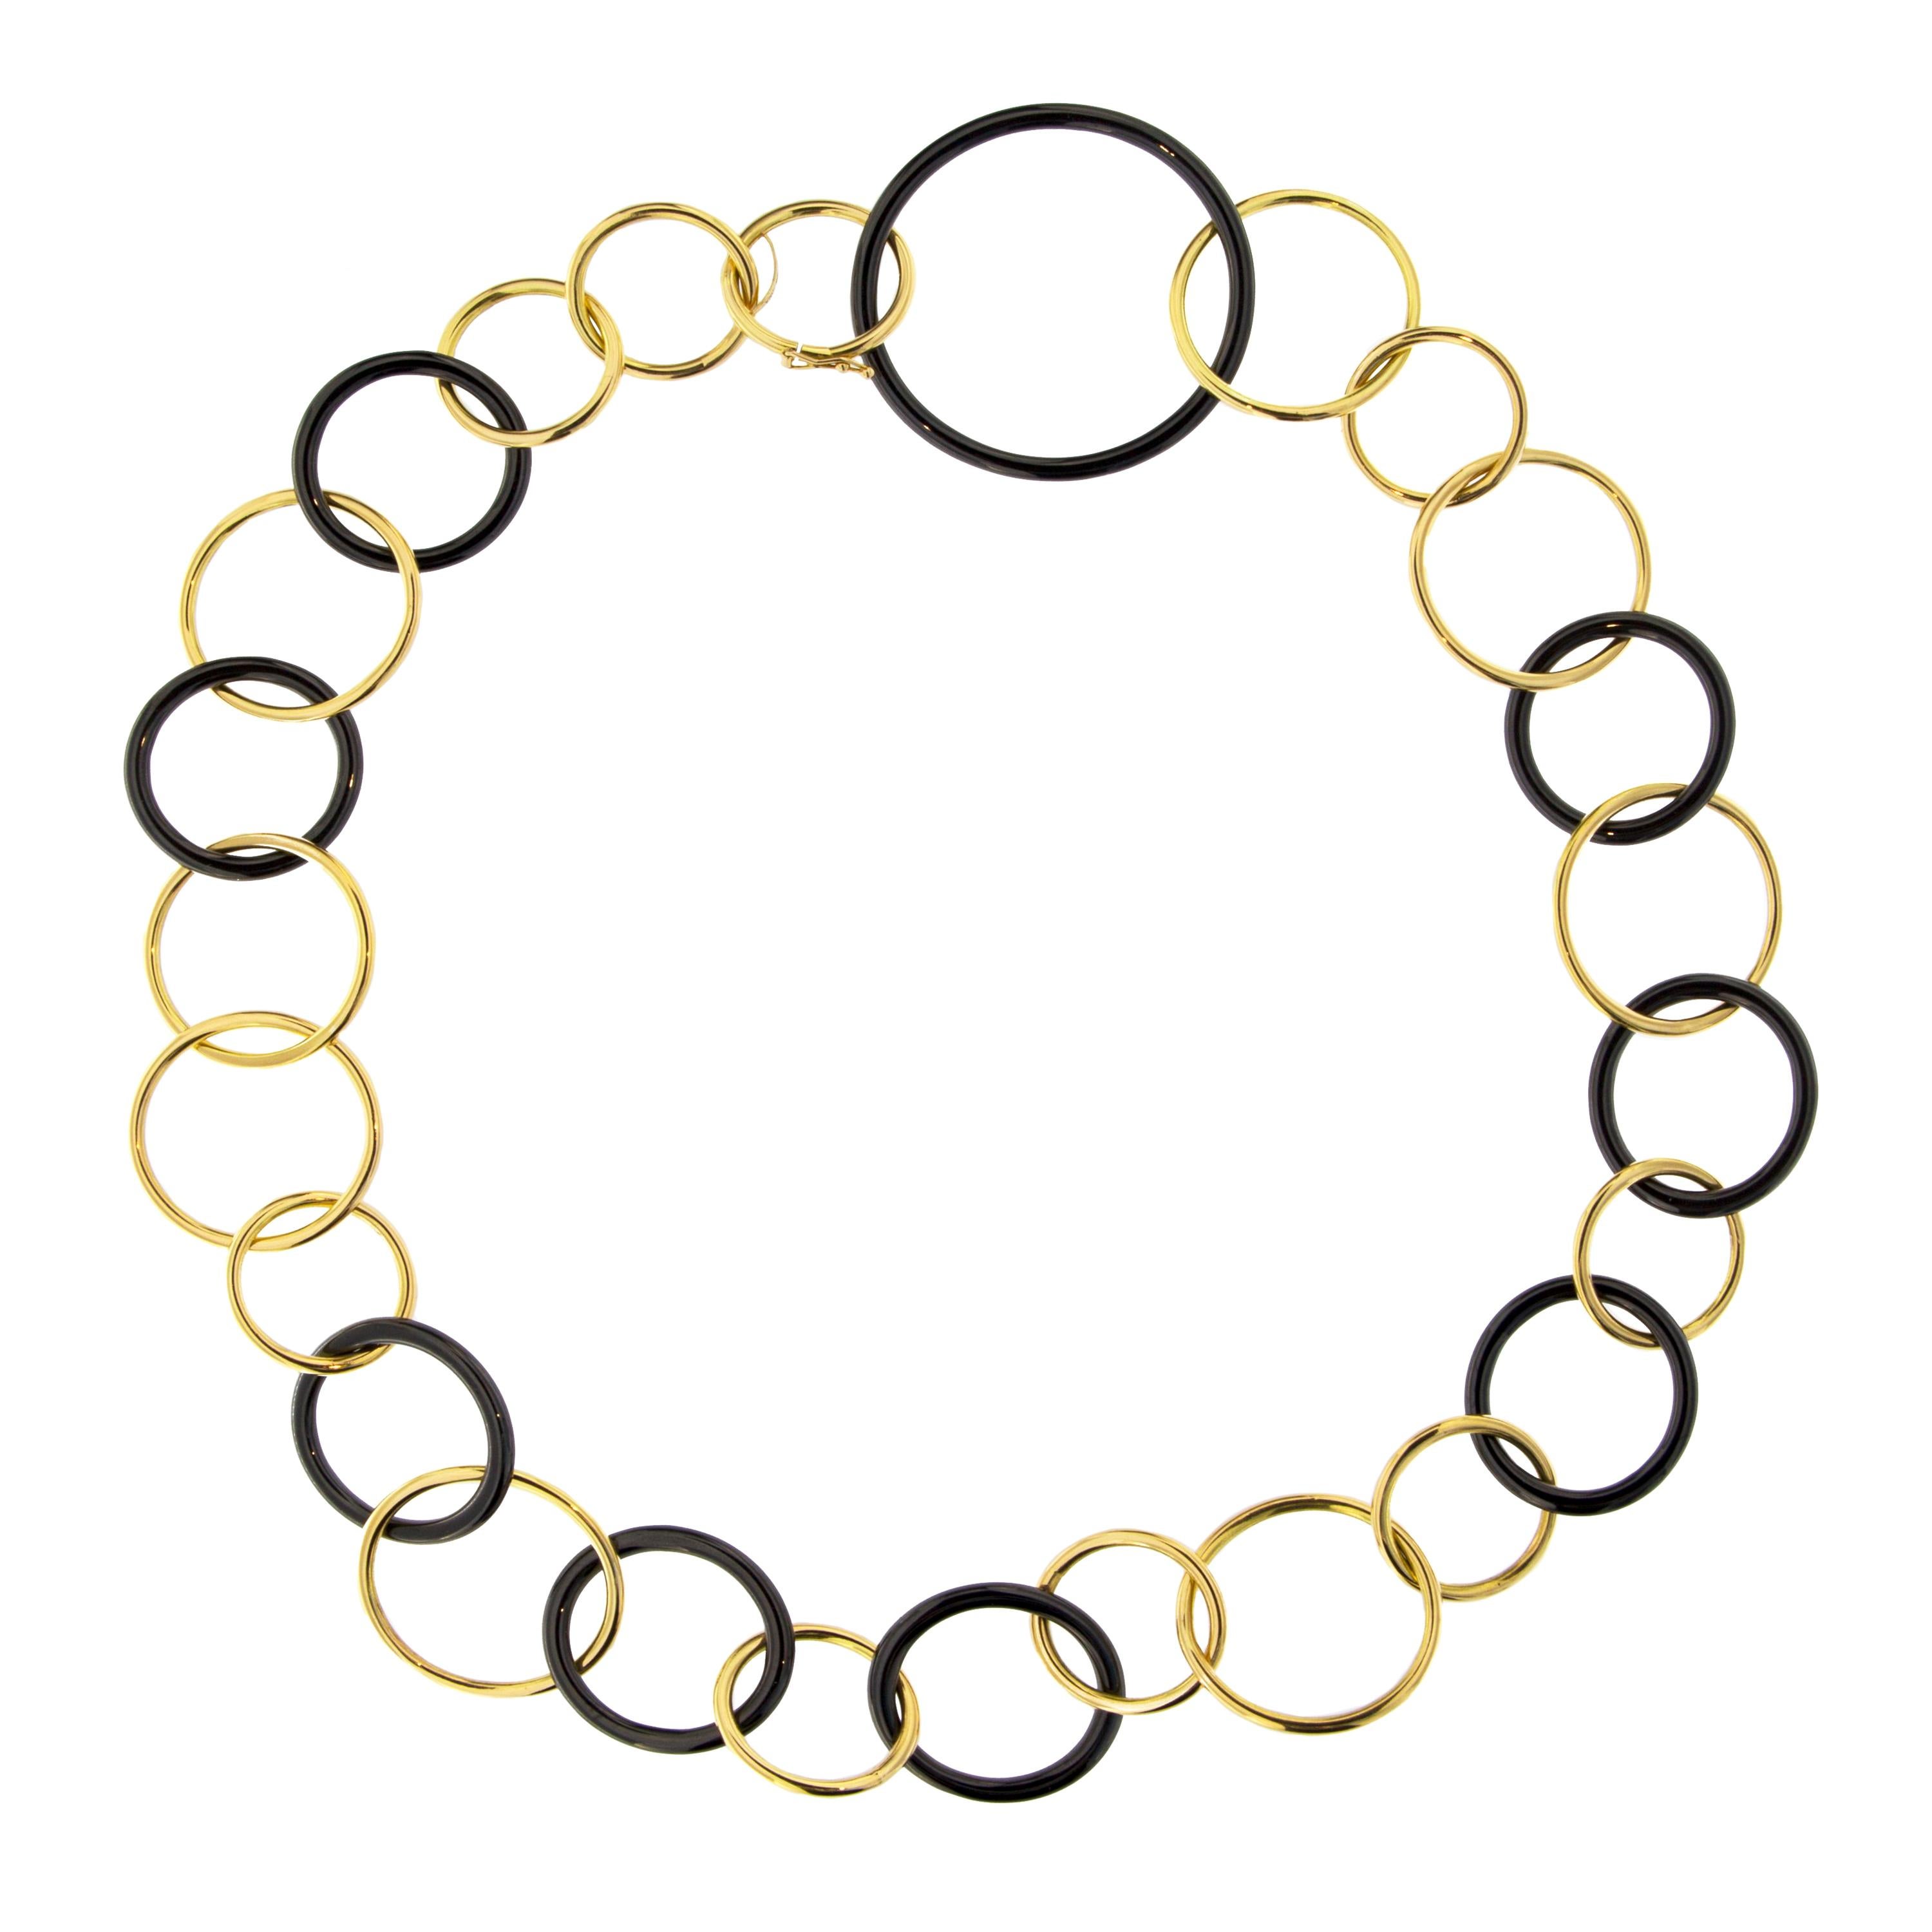 Alex Jona 18 Karat Yellow Gold and High-Tech Black Ceramic Circle Link Necklace